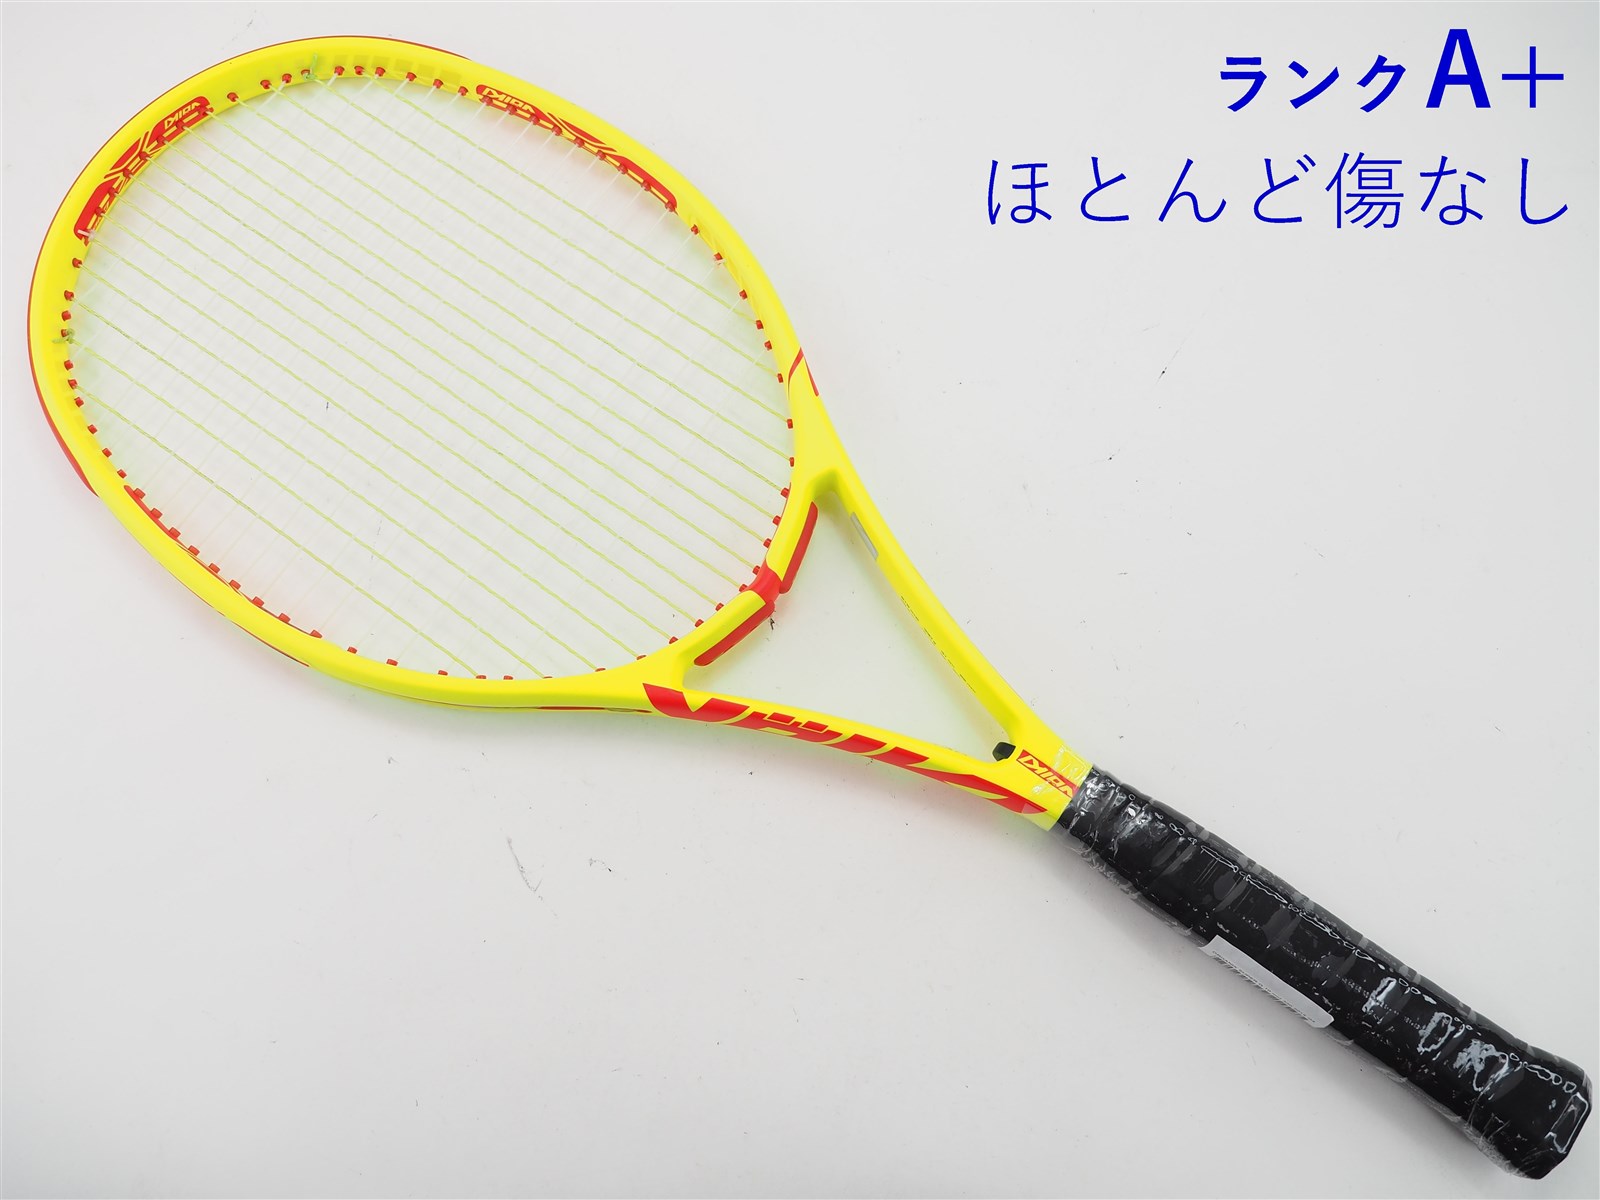 テニスラケット フォルクル オーガニクス スーパー G V1 OS 2015年モデル (XSL1)VOLKL ORGANIX SUPER G V1 OS 2015